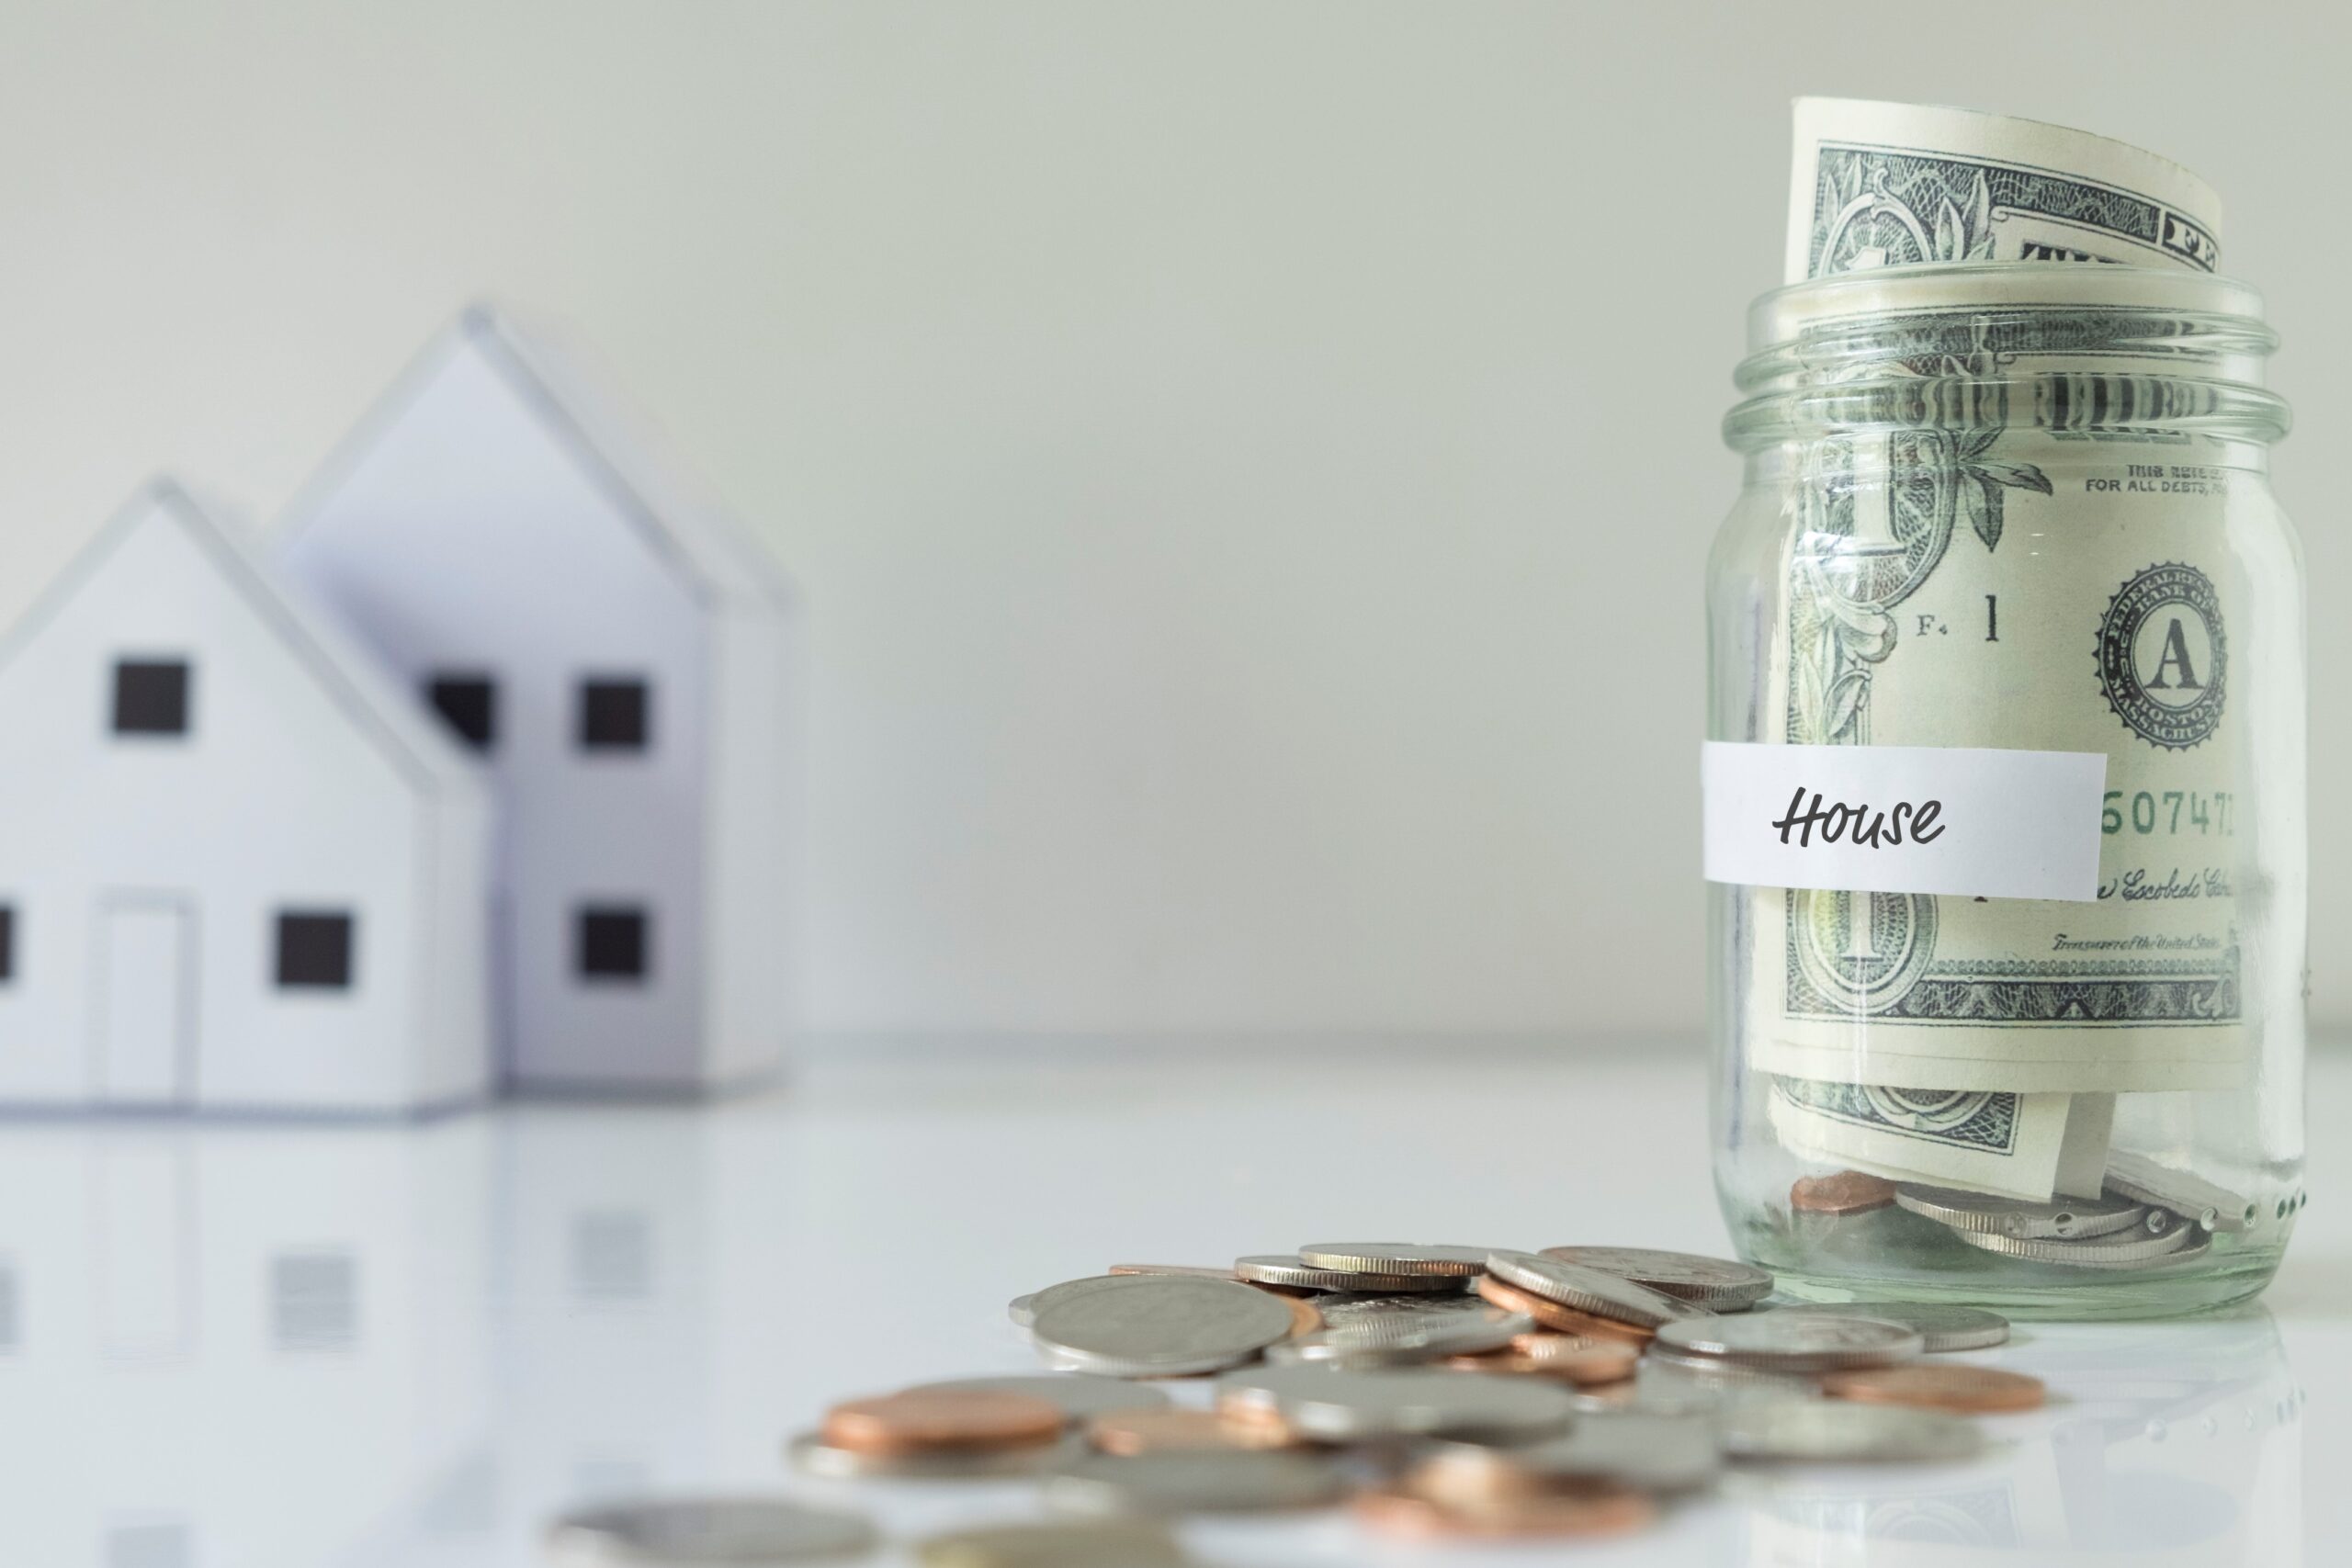 Chi phí liên quan đến việc bán cho Homebase là gì?